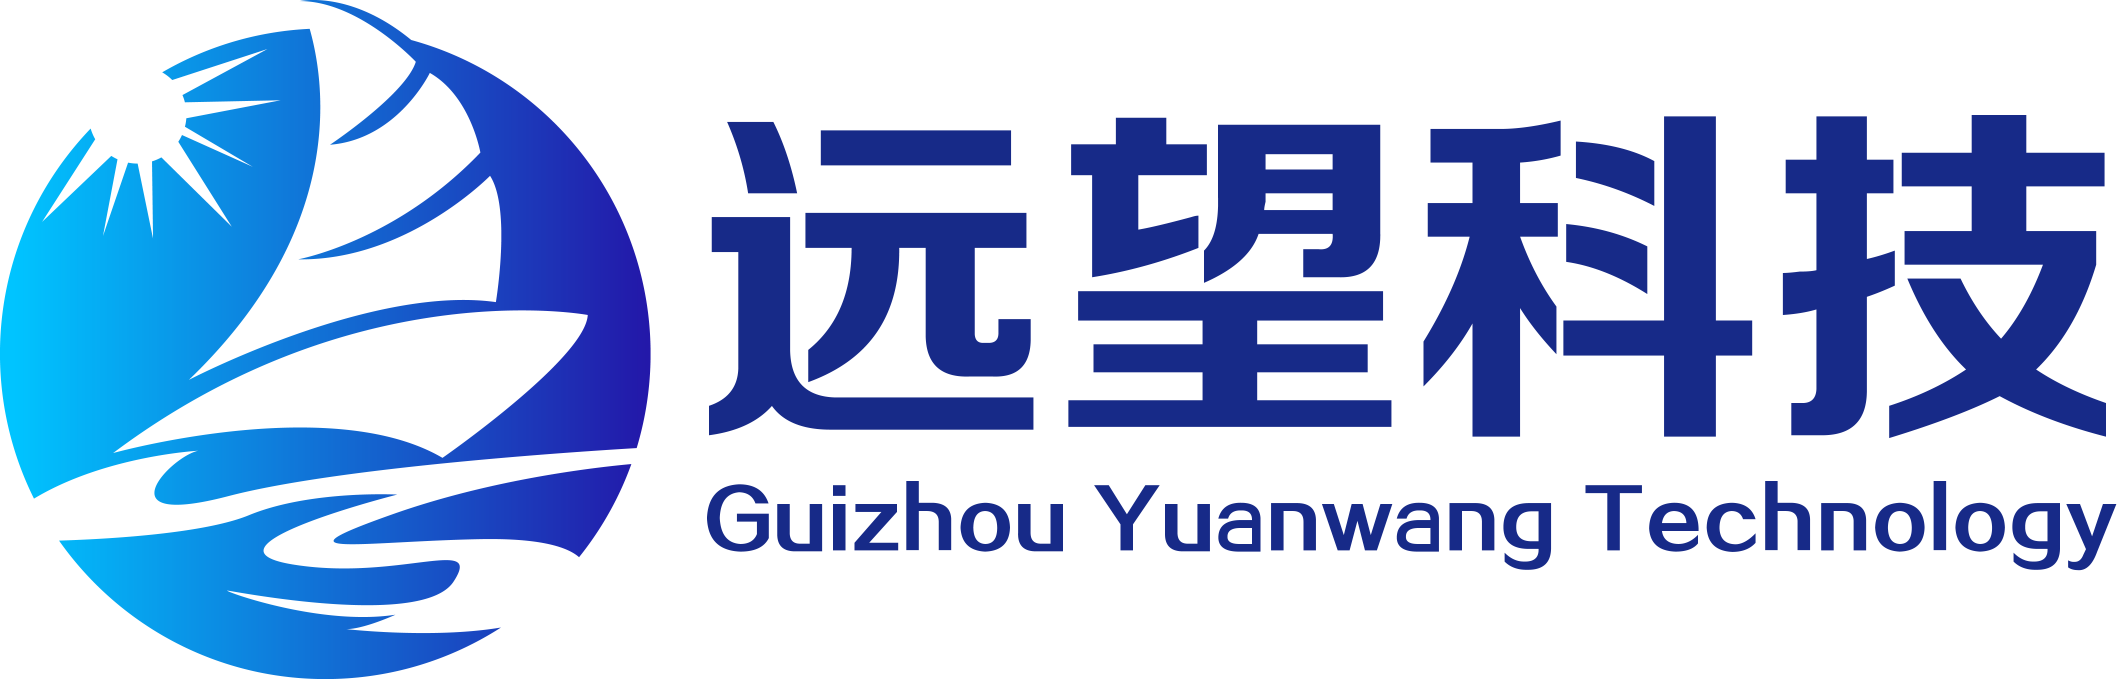 贵州远望科技有限公司/Guizhou Yuanwang Technology Co., Ltd